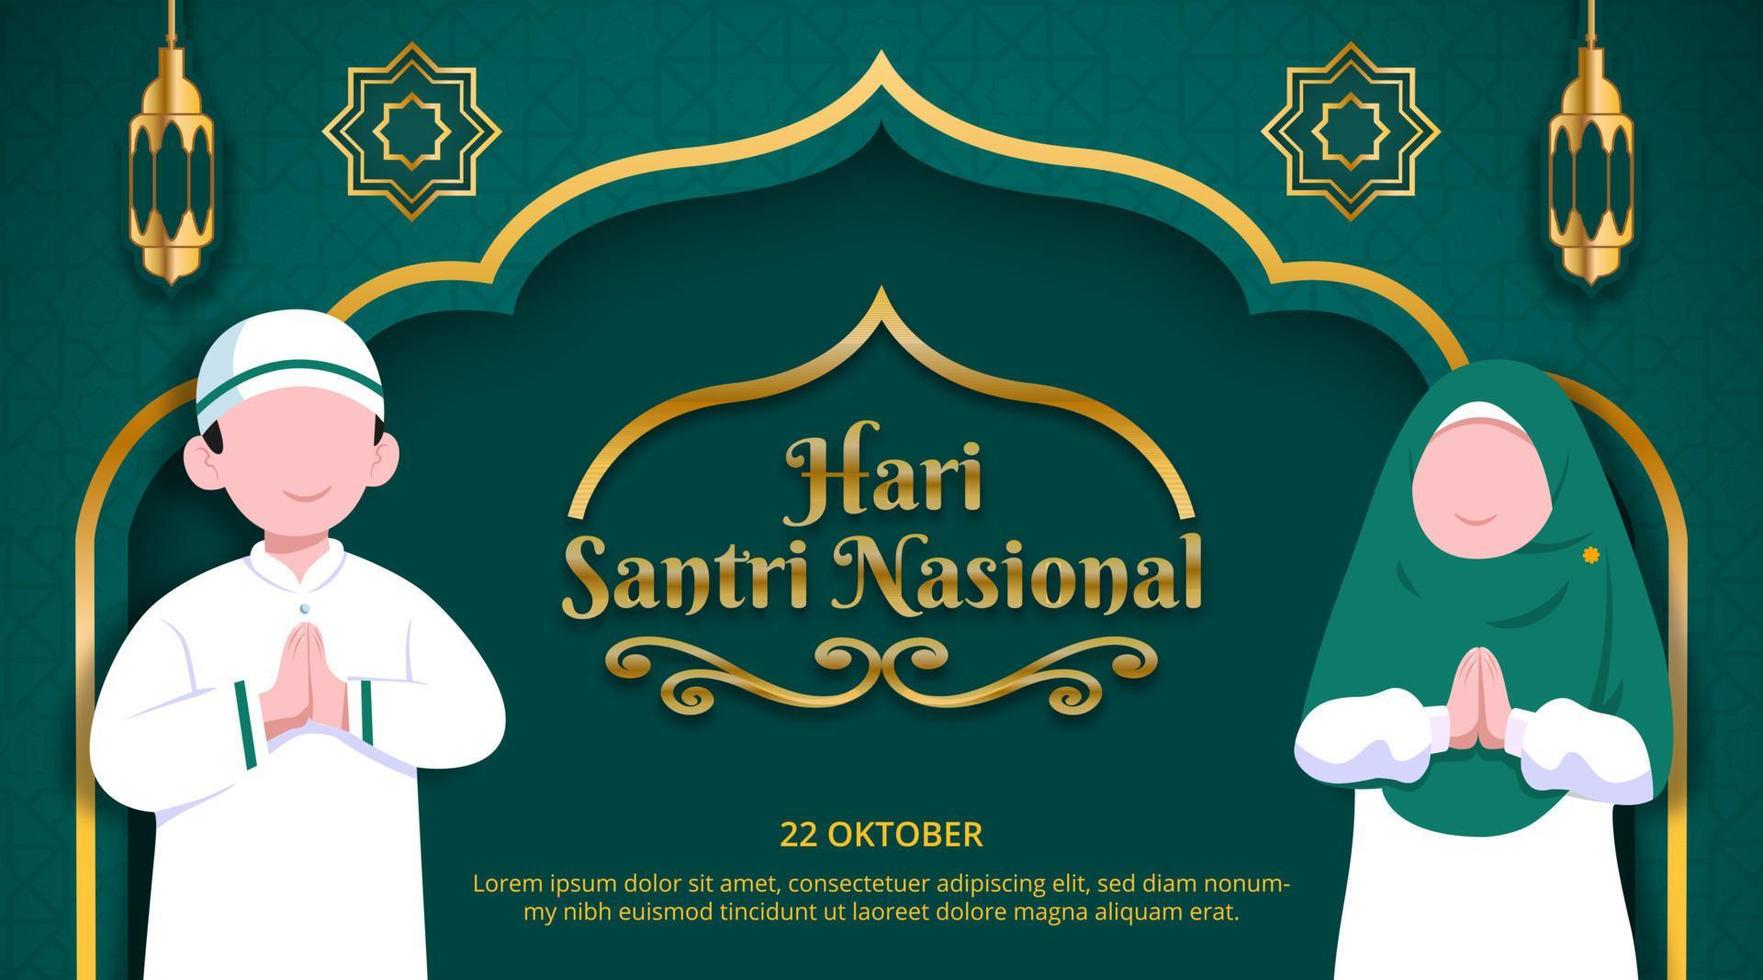 hari santri nasional ou journée nationale des étudiants musulmans indonésiens avec des étudiants islamiques vecteur